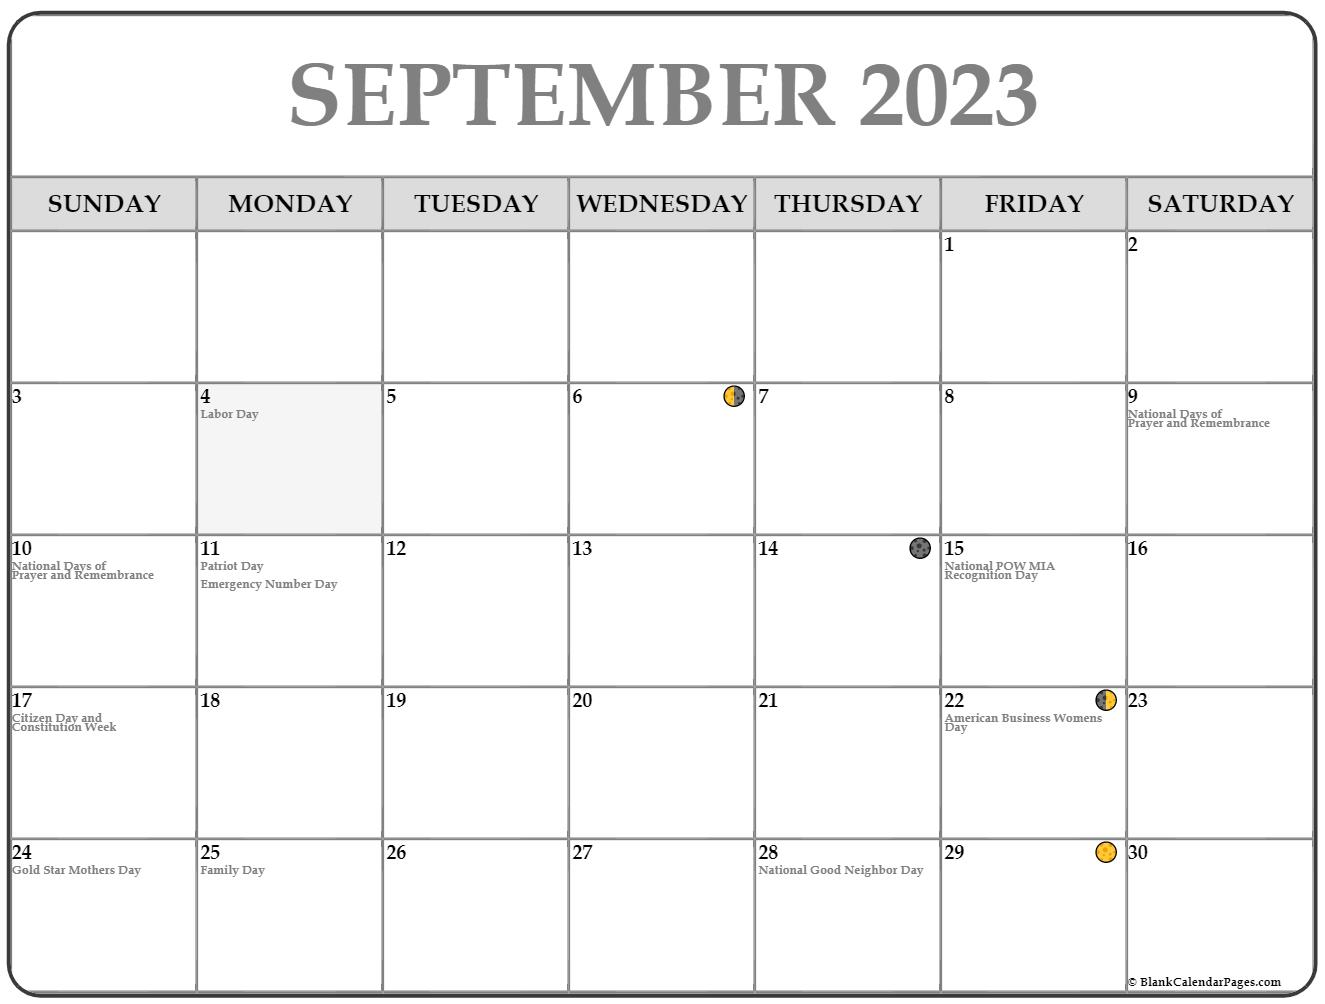 september-2023-moon-calendar-get-calender-2023-update